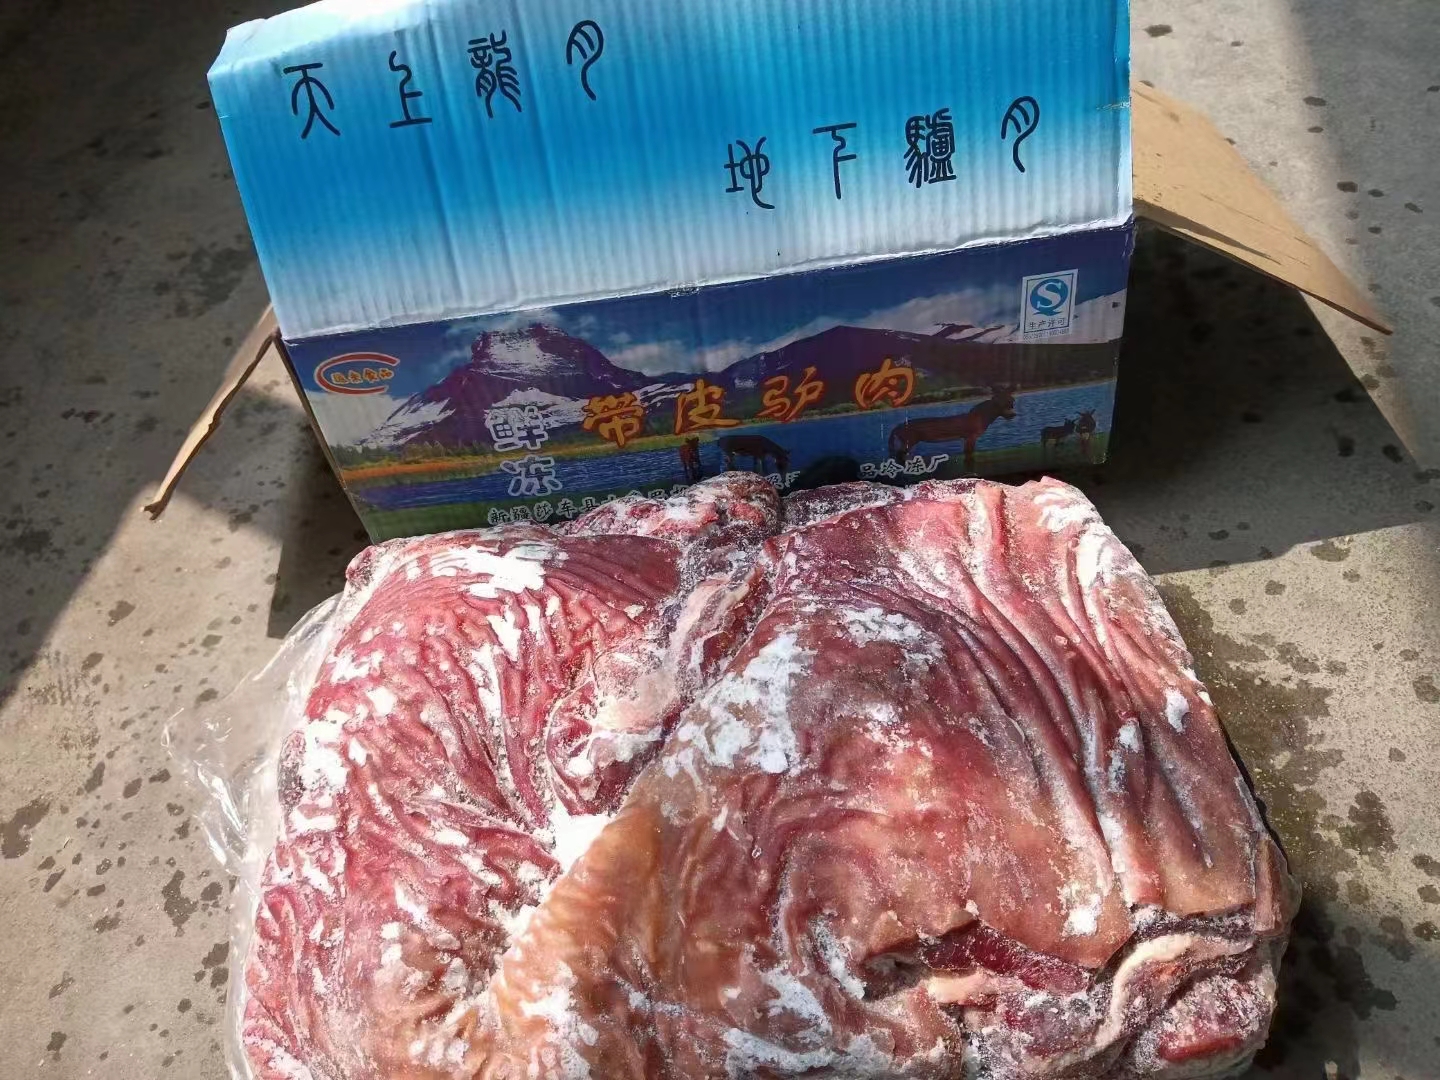 鄭州驢副產品 帶皮驢肉 每箱20斤裝